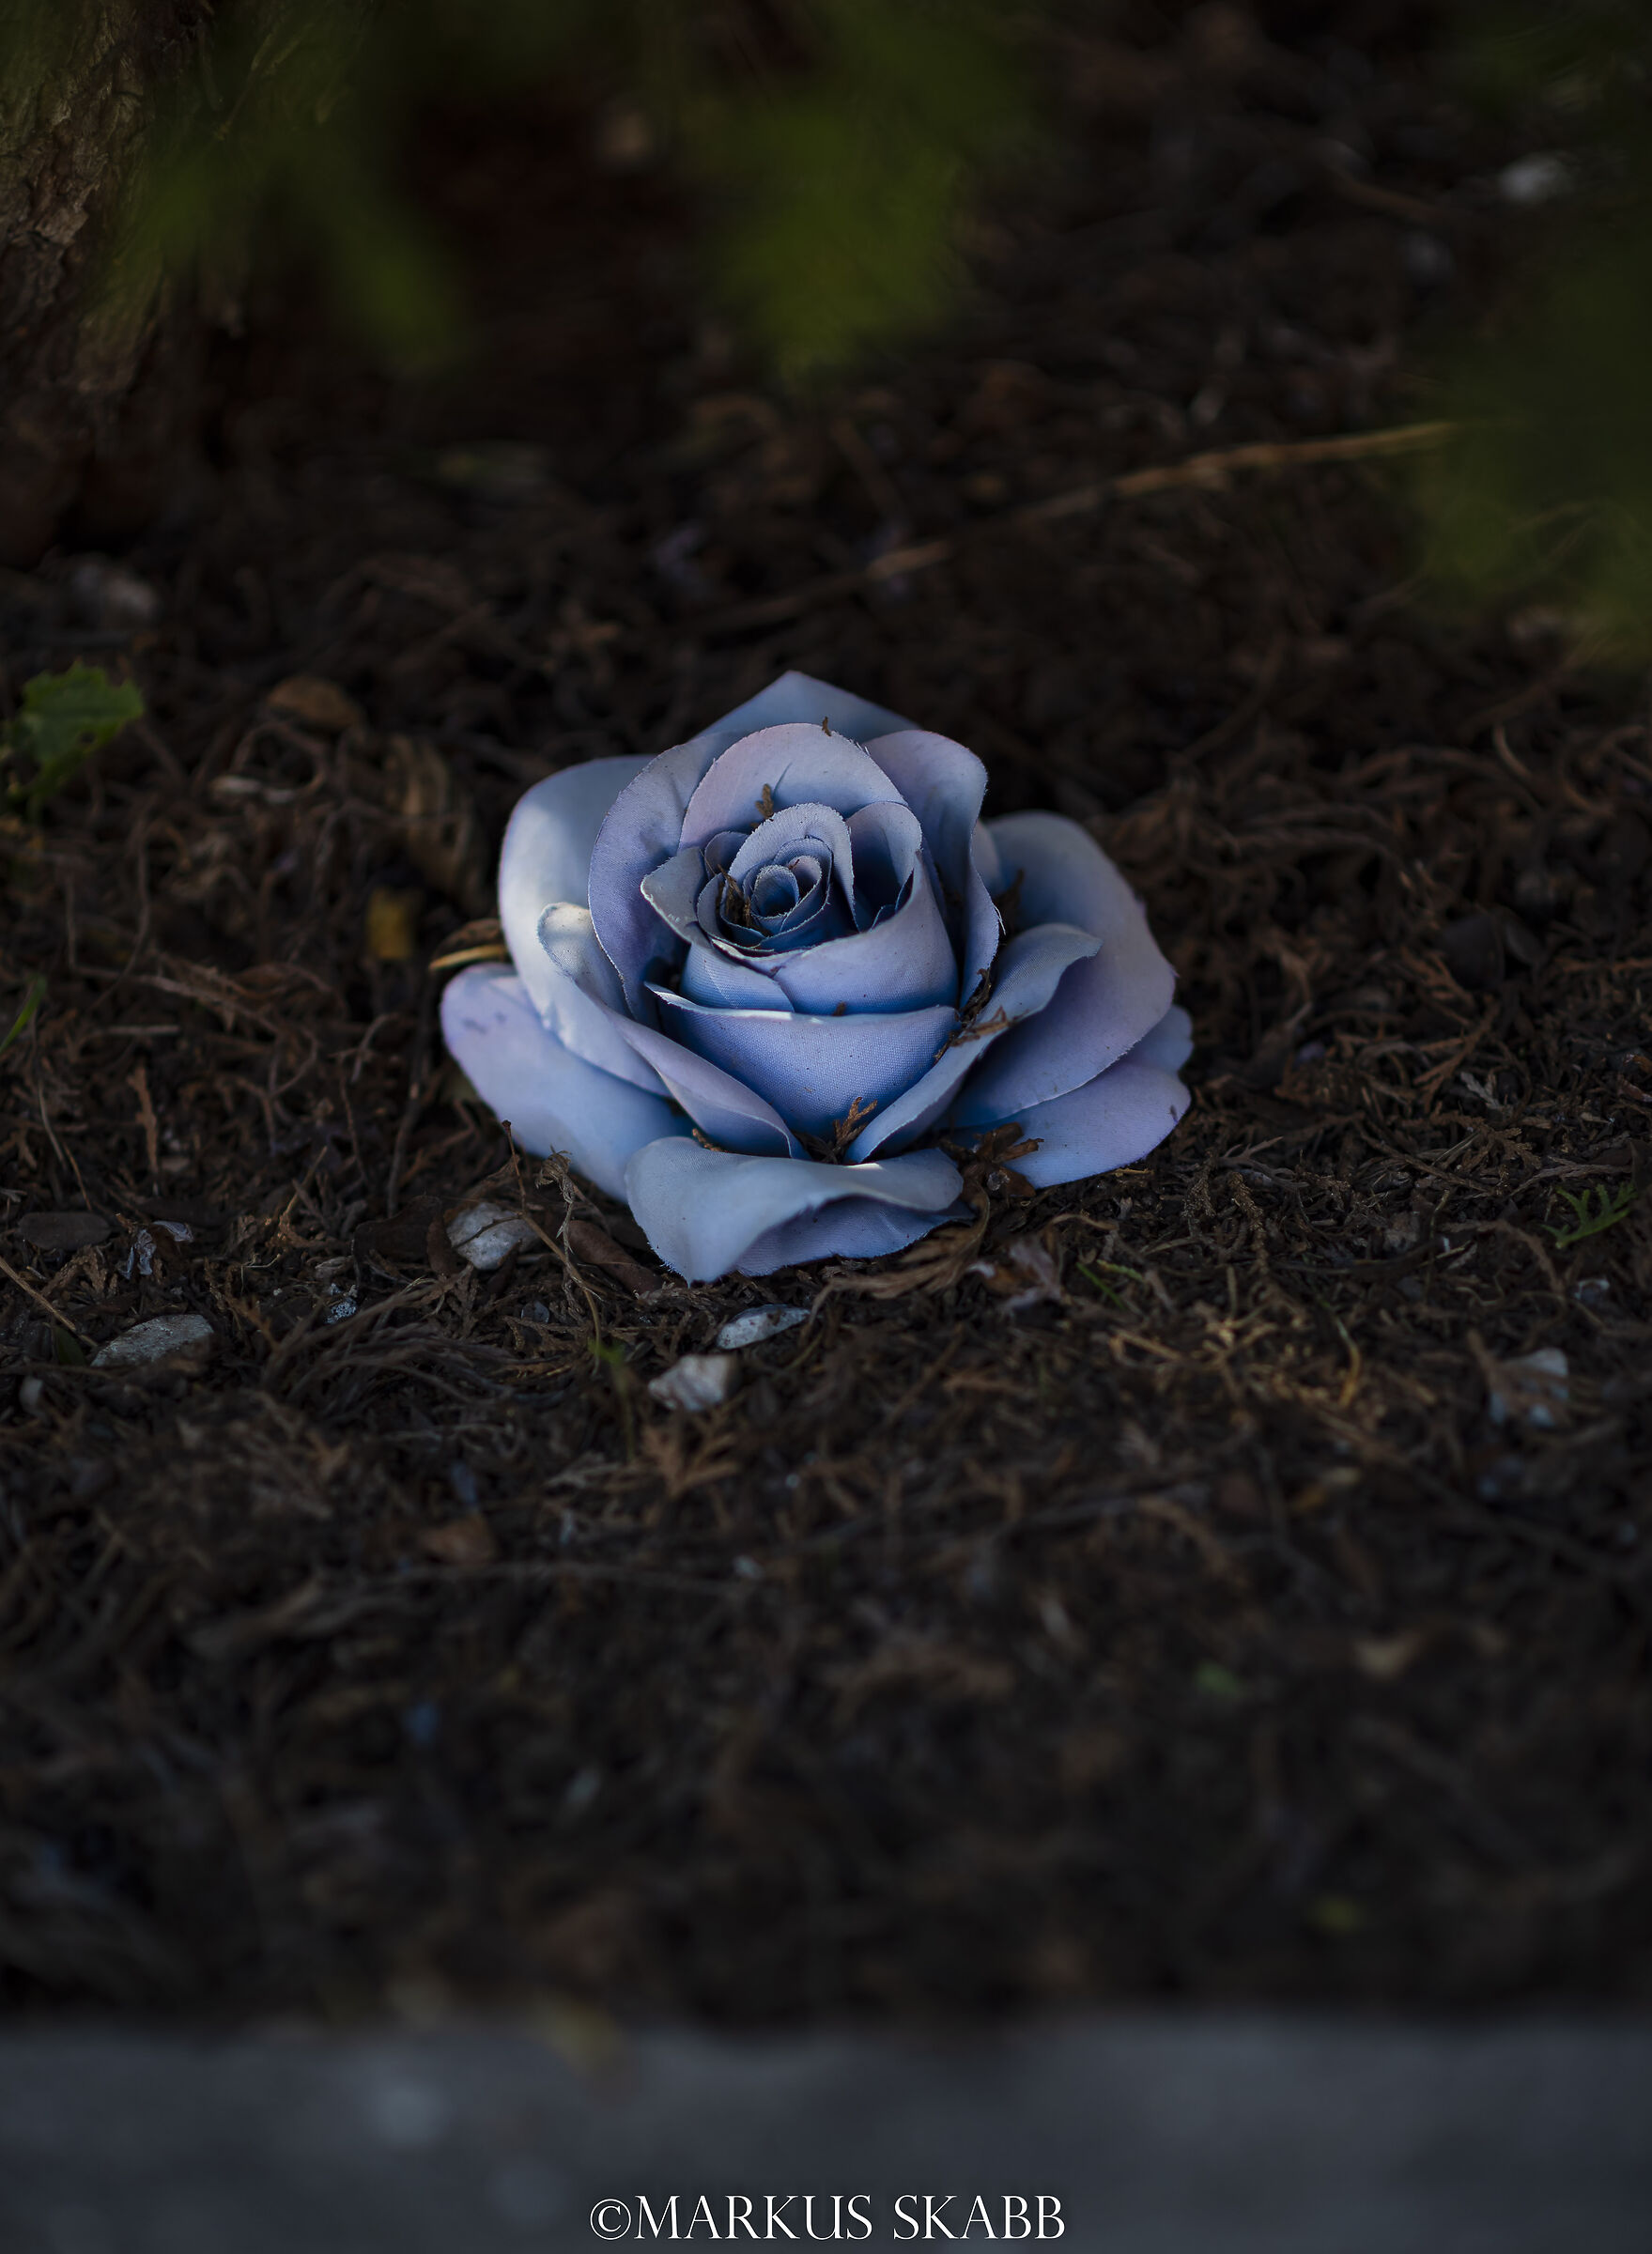 Il fiore azzurro del romanticismo...